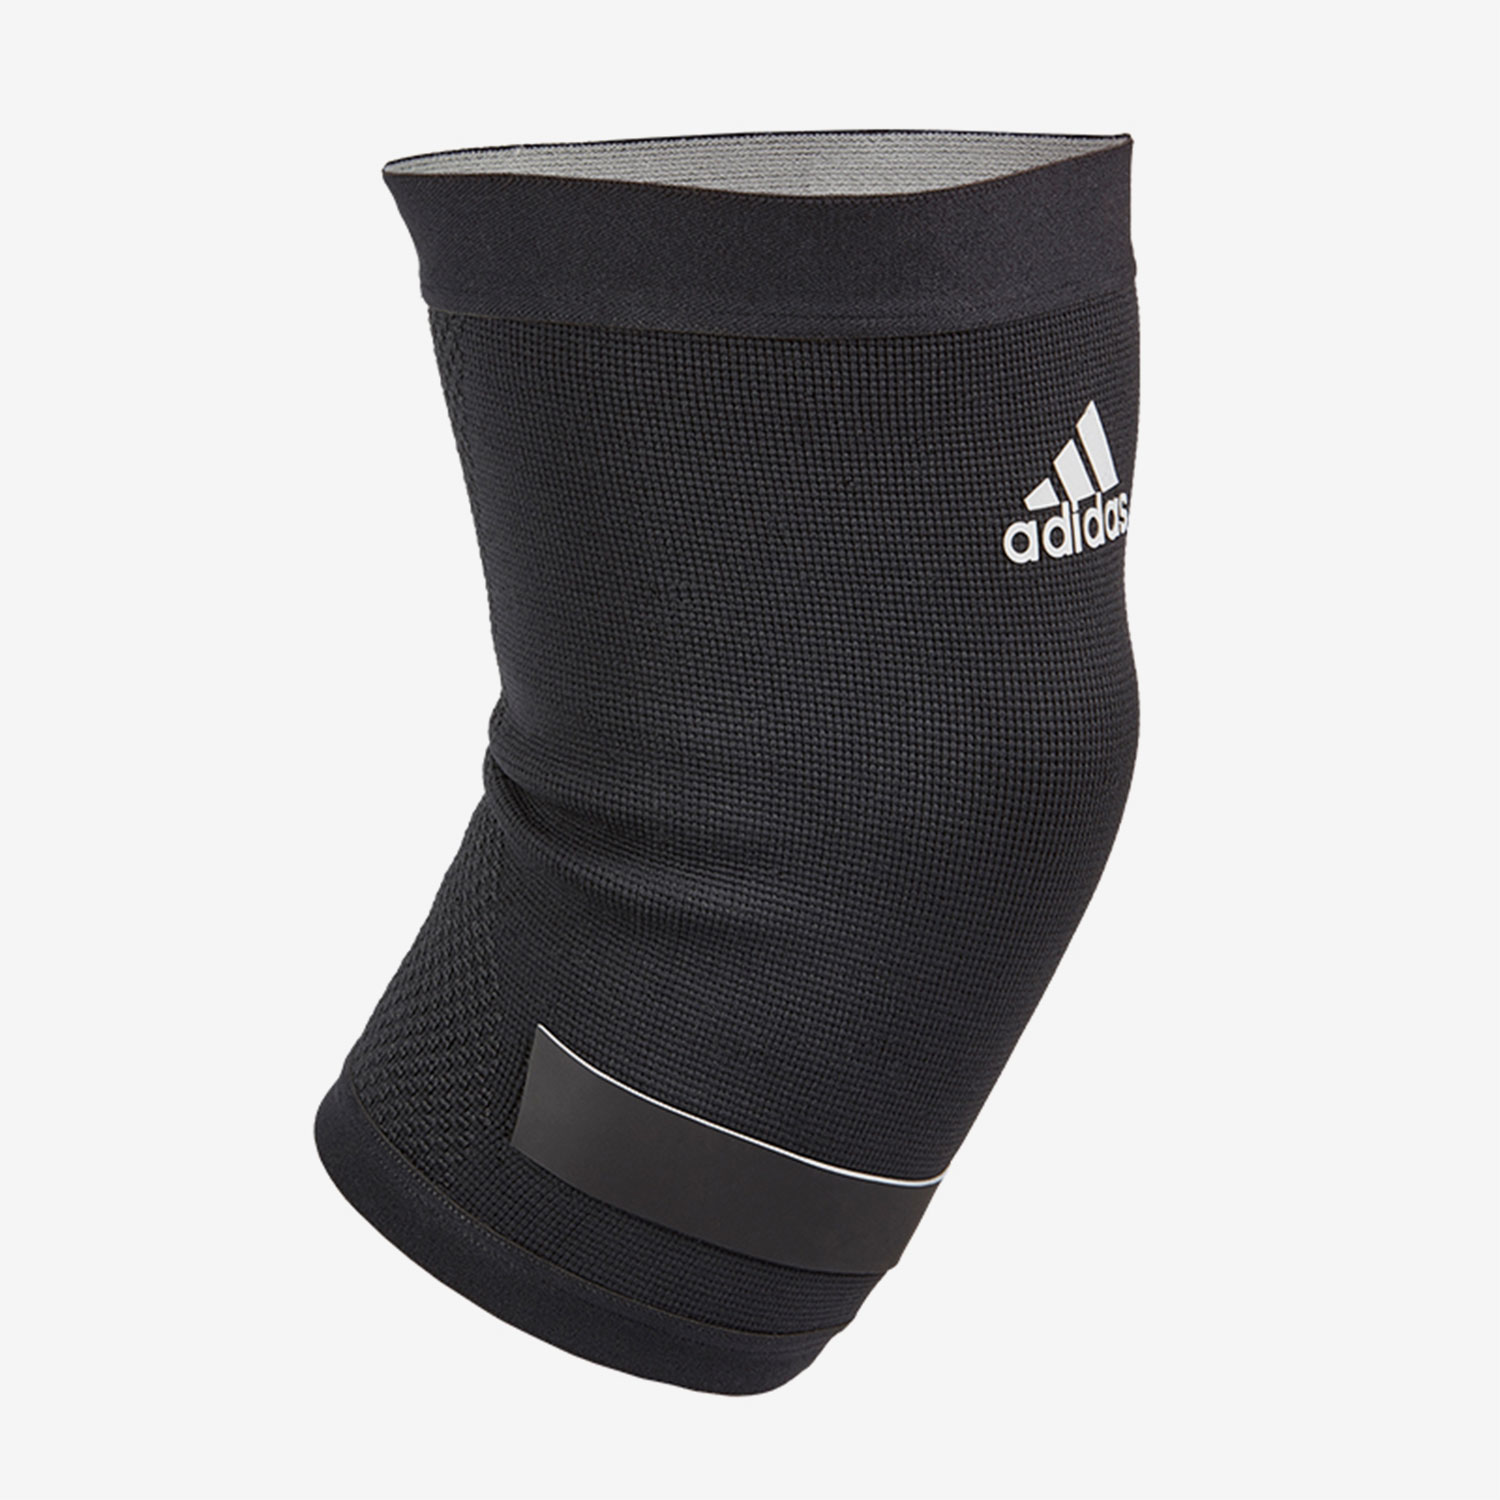 Adidas/阿迪达斯正品夏新训练健身运动男女护具护肘ADSU-1332